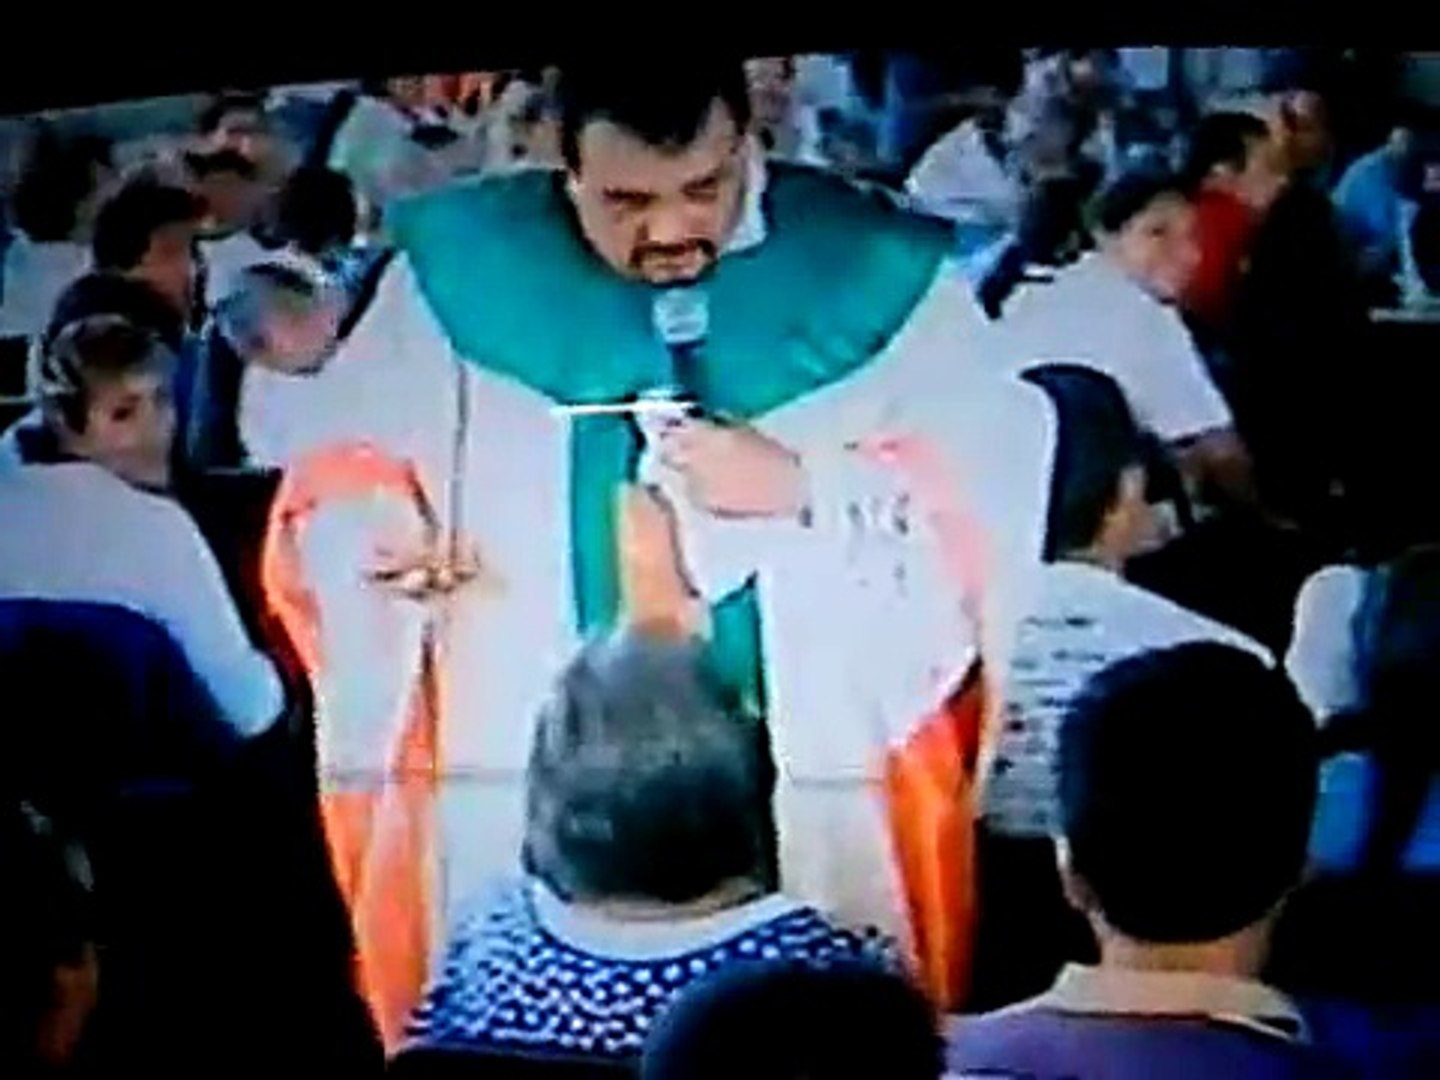 Padre Moises Larraga Medellin. Misa de Sanacion #13 - video Dailymotion